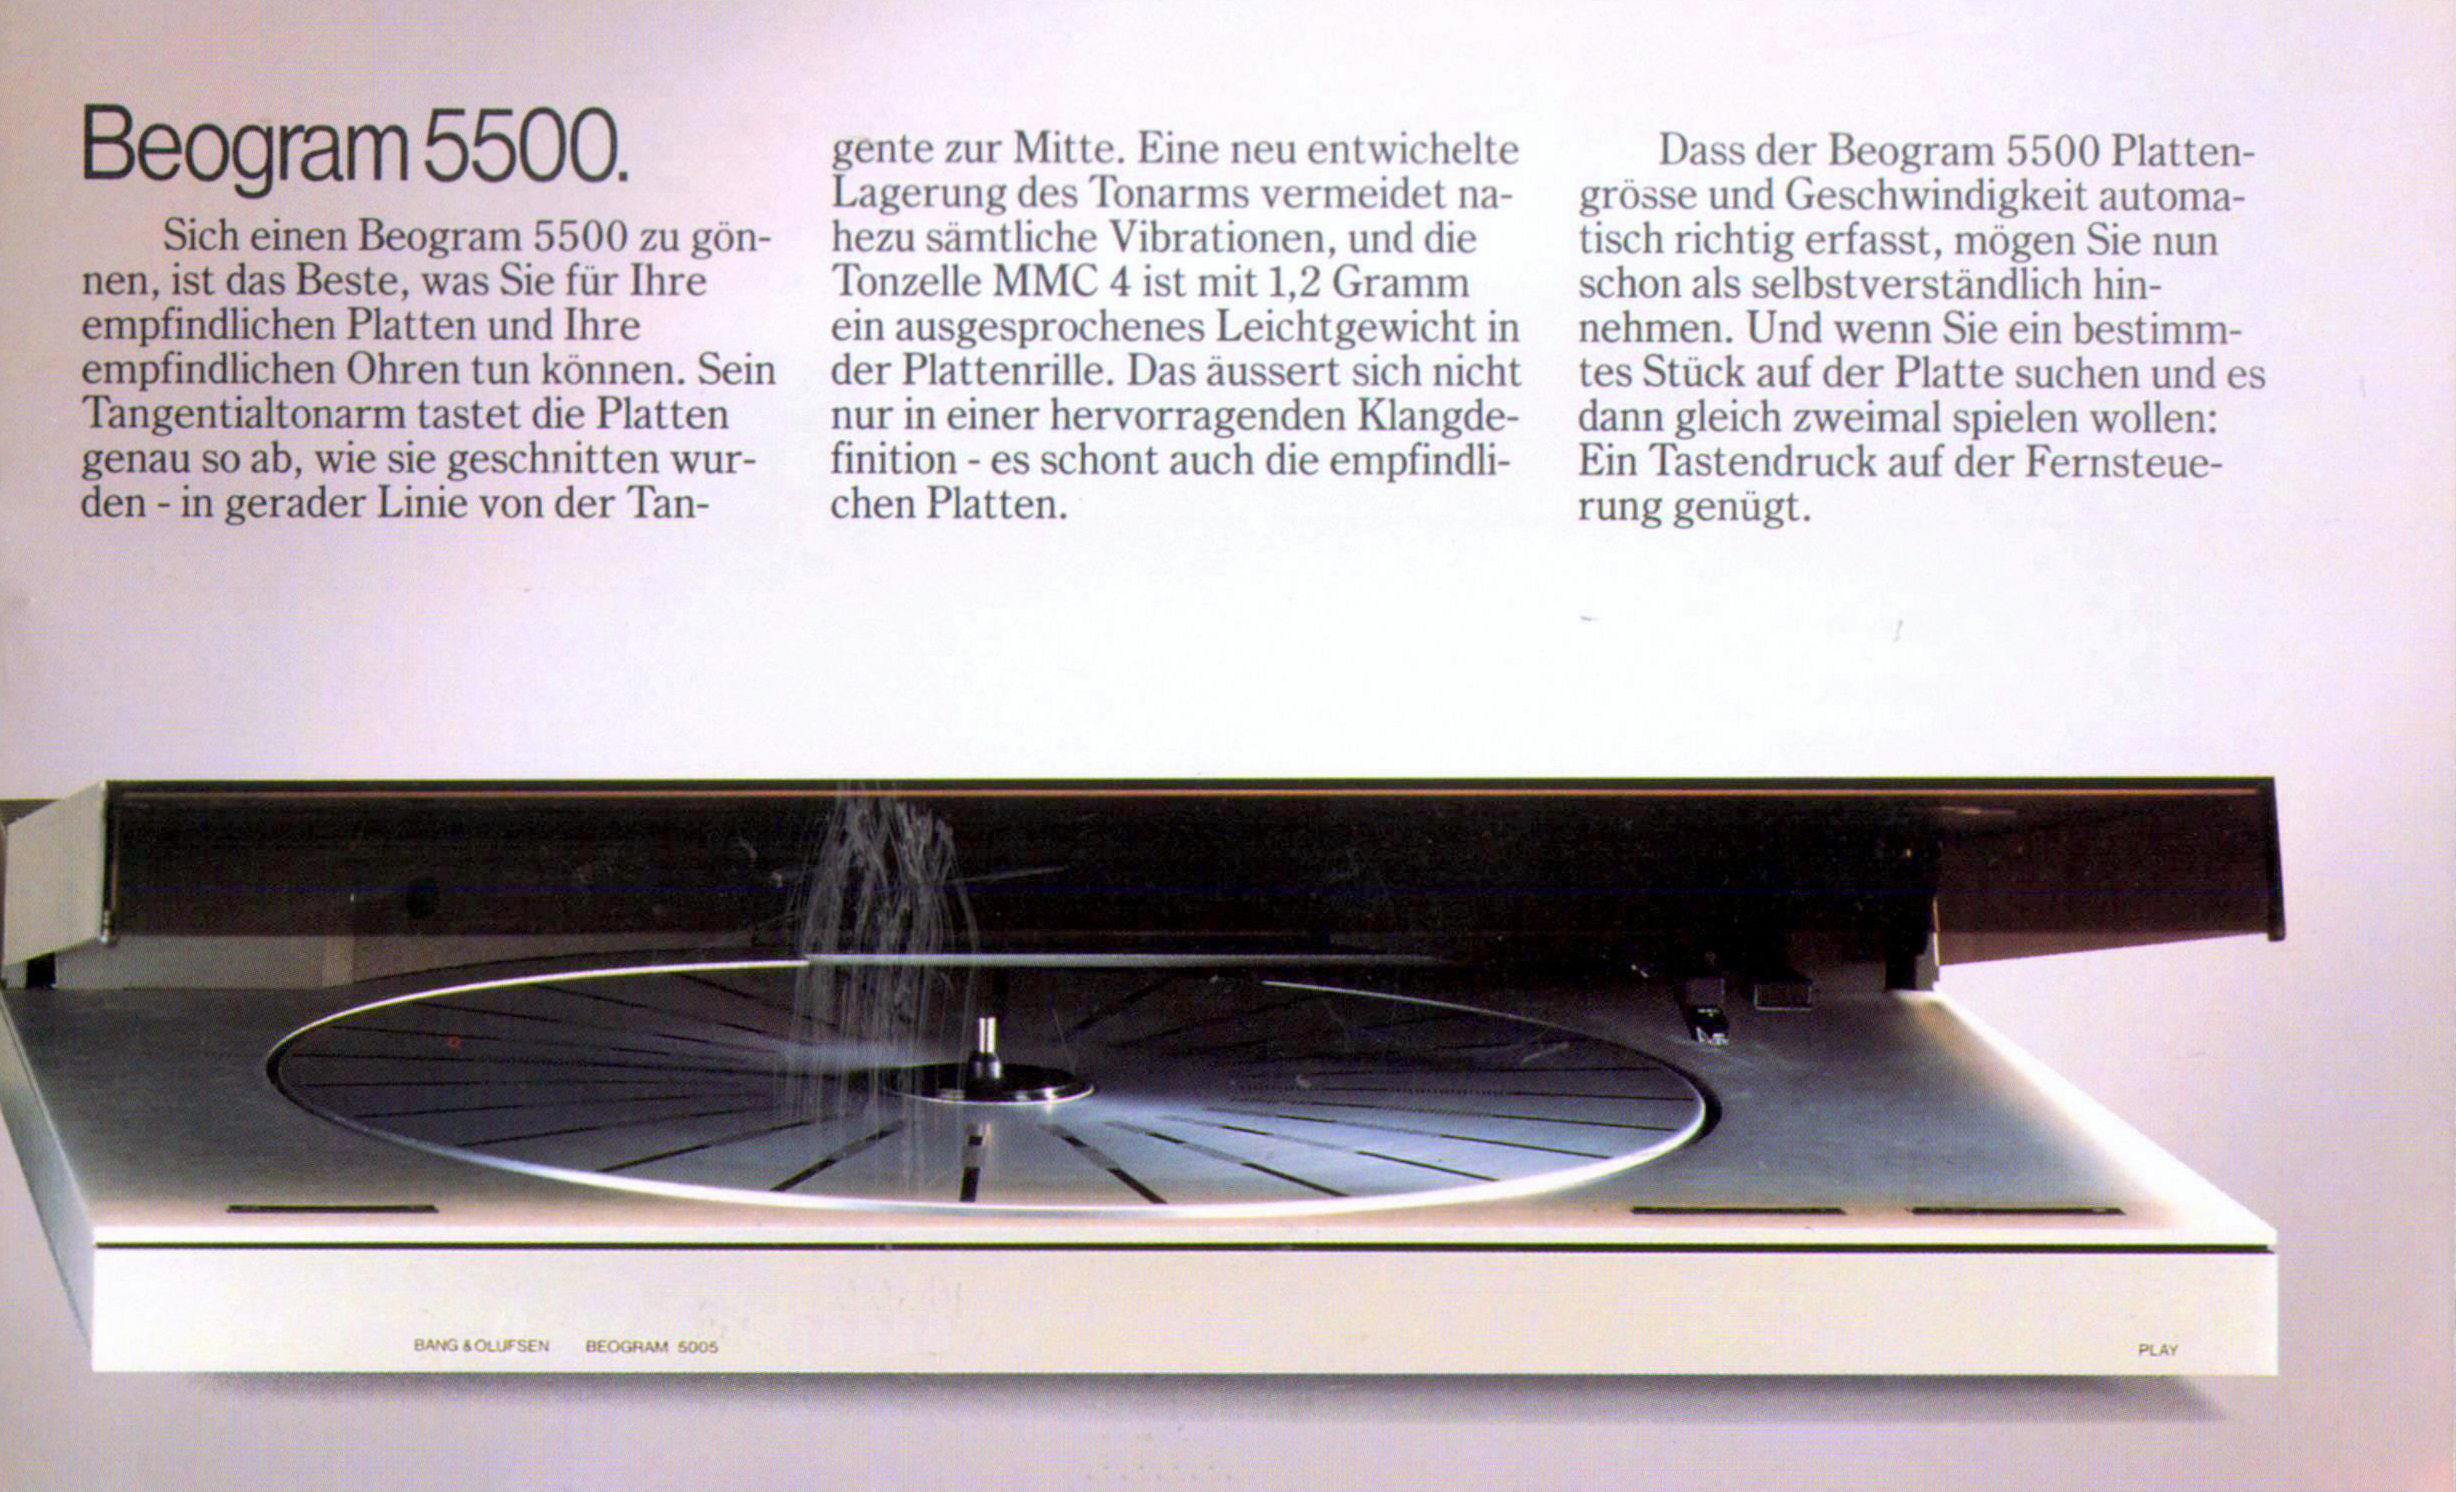 Bang & Olufsen Beogram 5500-Prospekt-1986.jpg